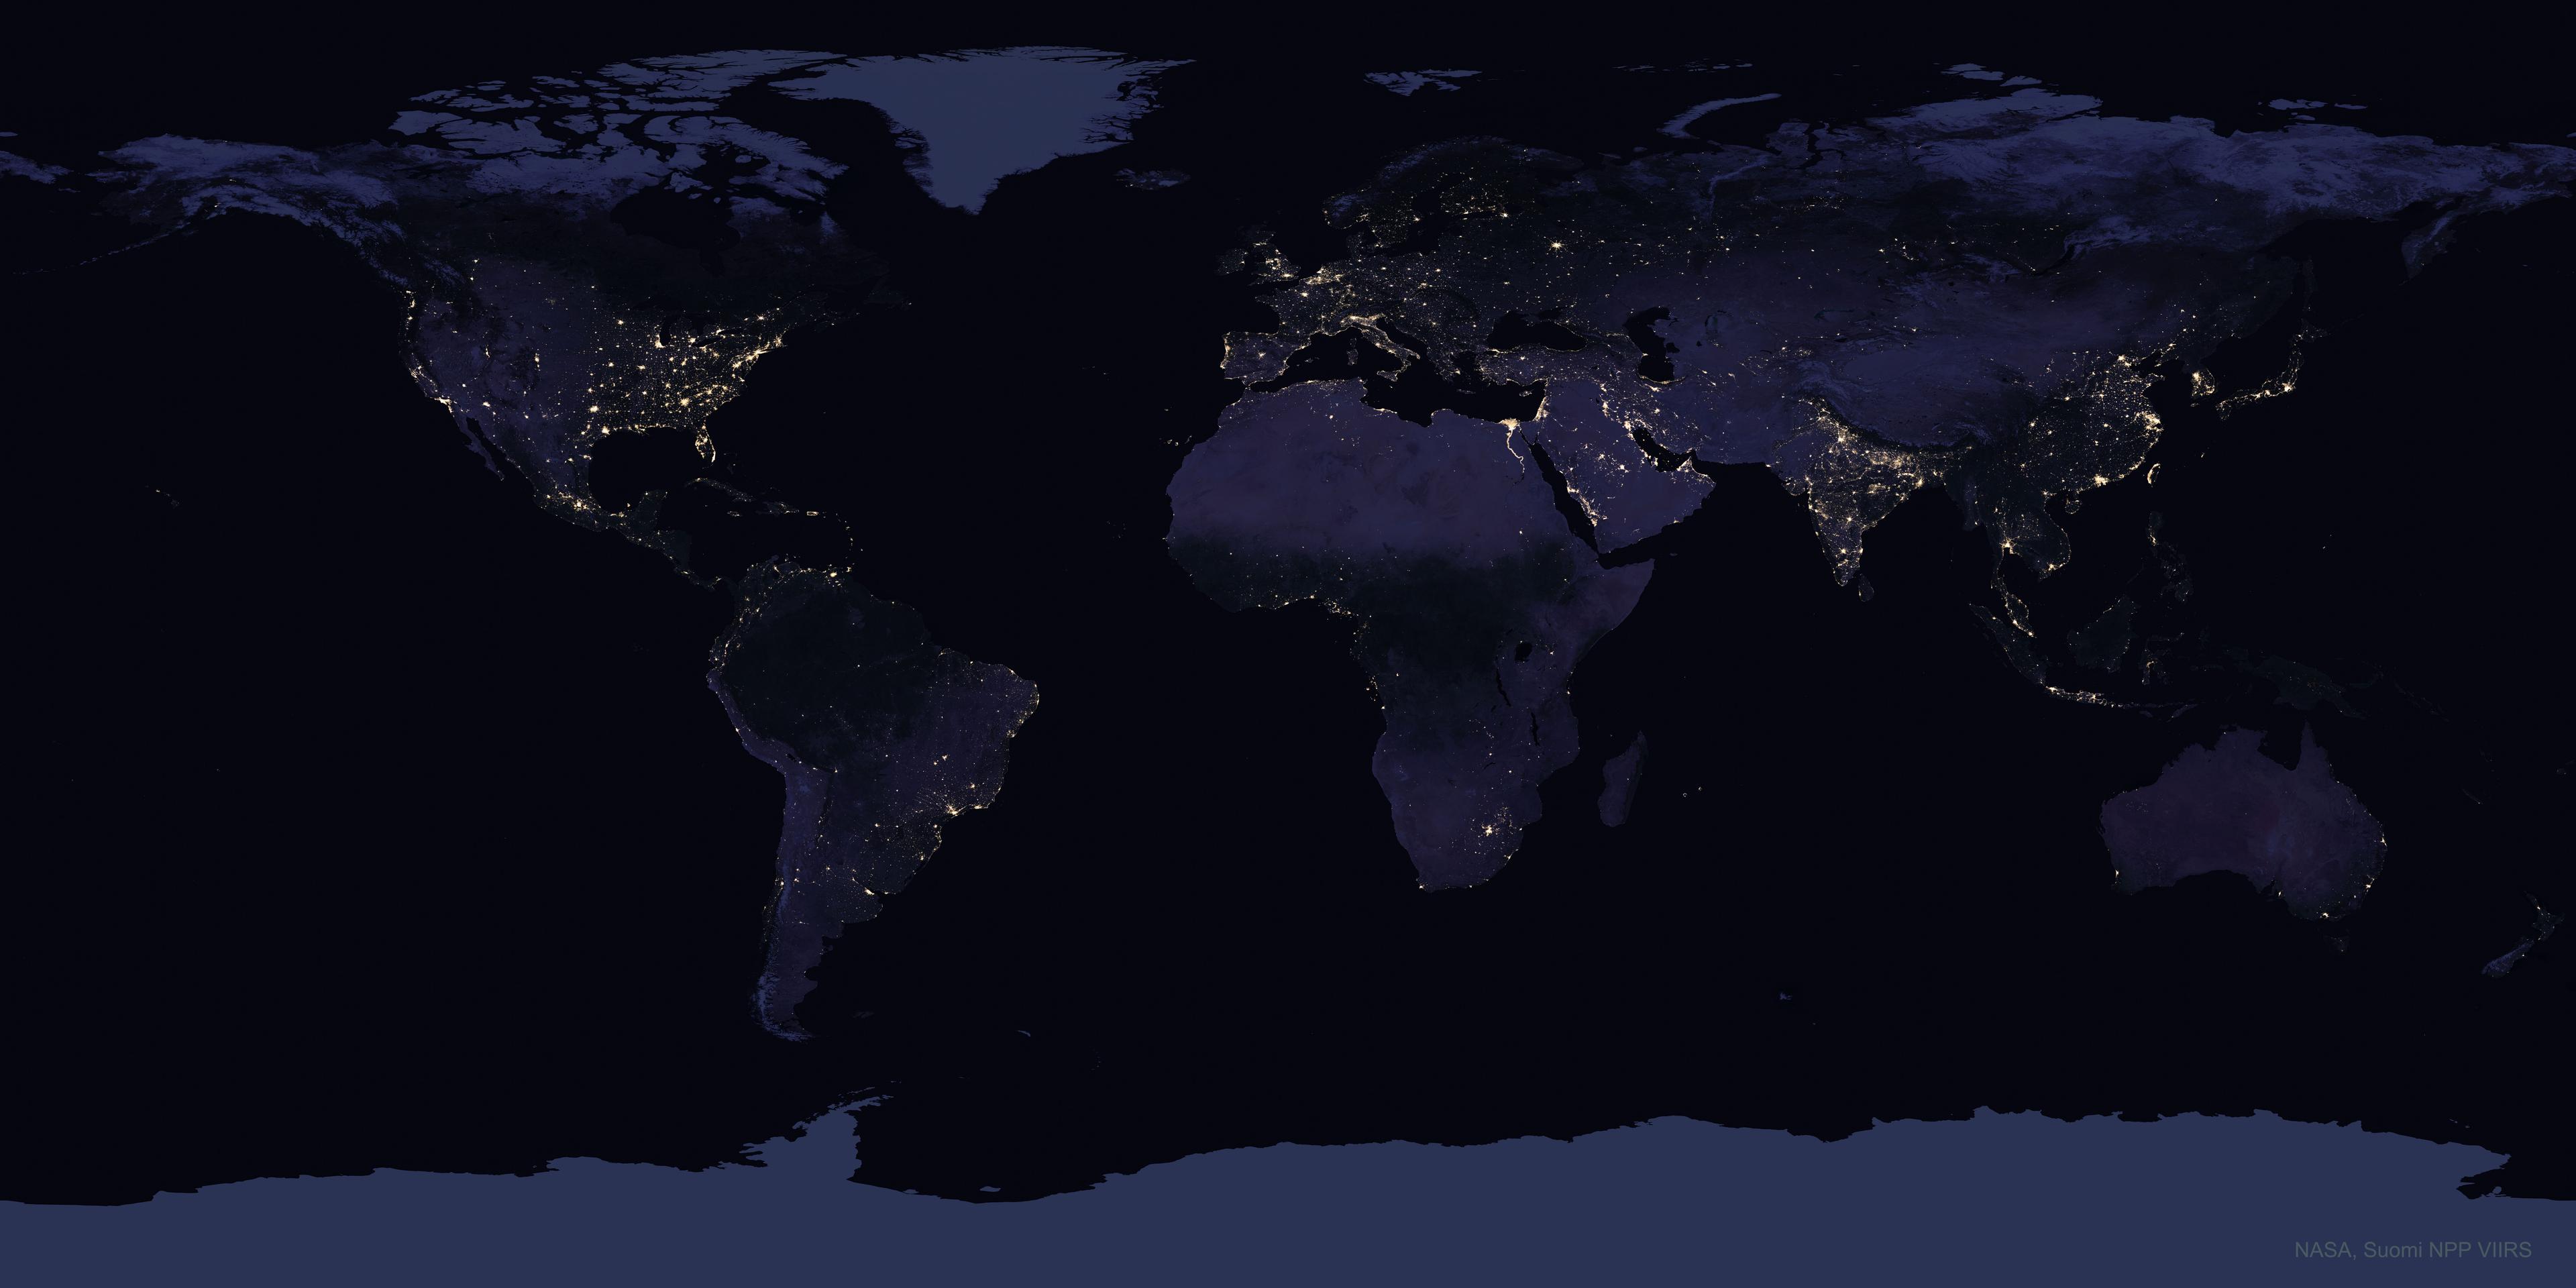 خريطة للأرض تظهر عليها القارّات والمحيطات في الليل حيث تشعّ أنوار المراكز الحضريّة